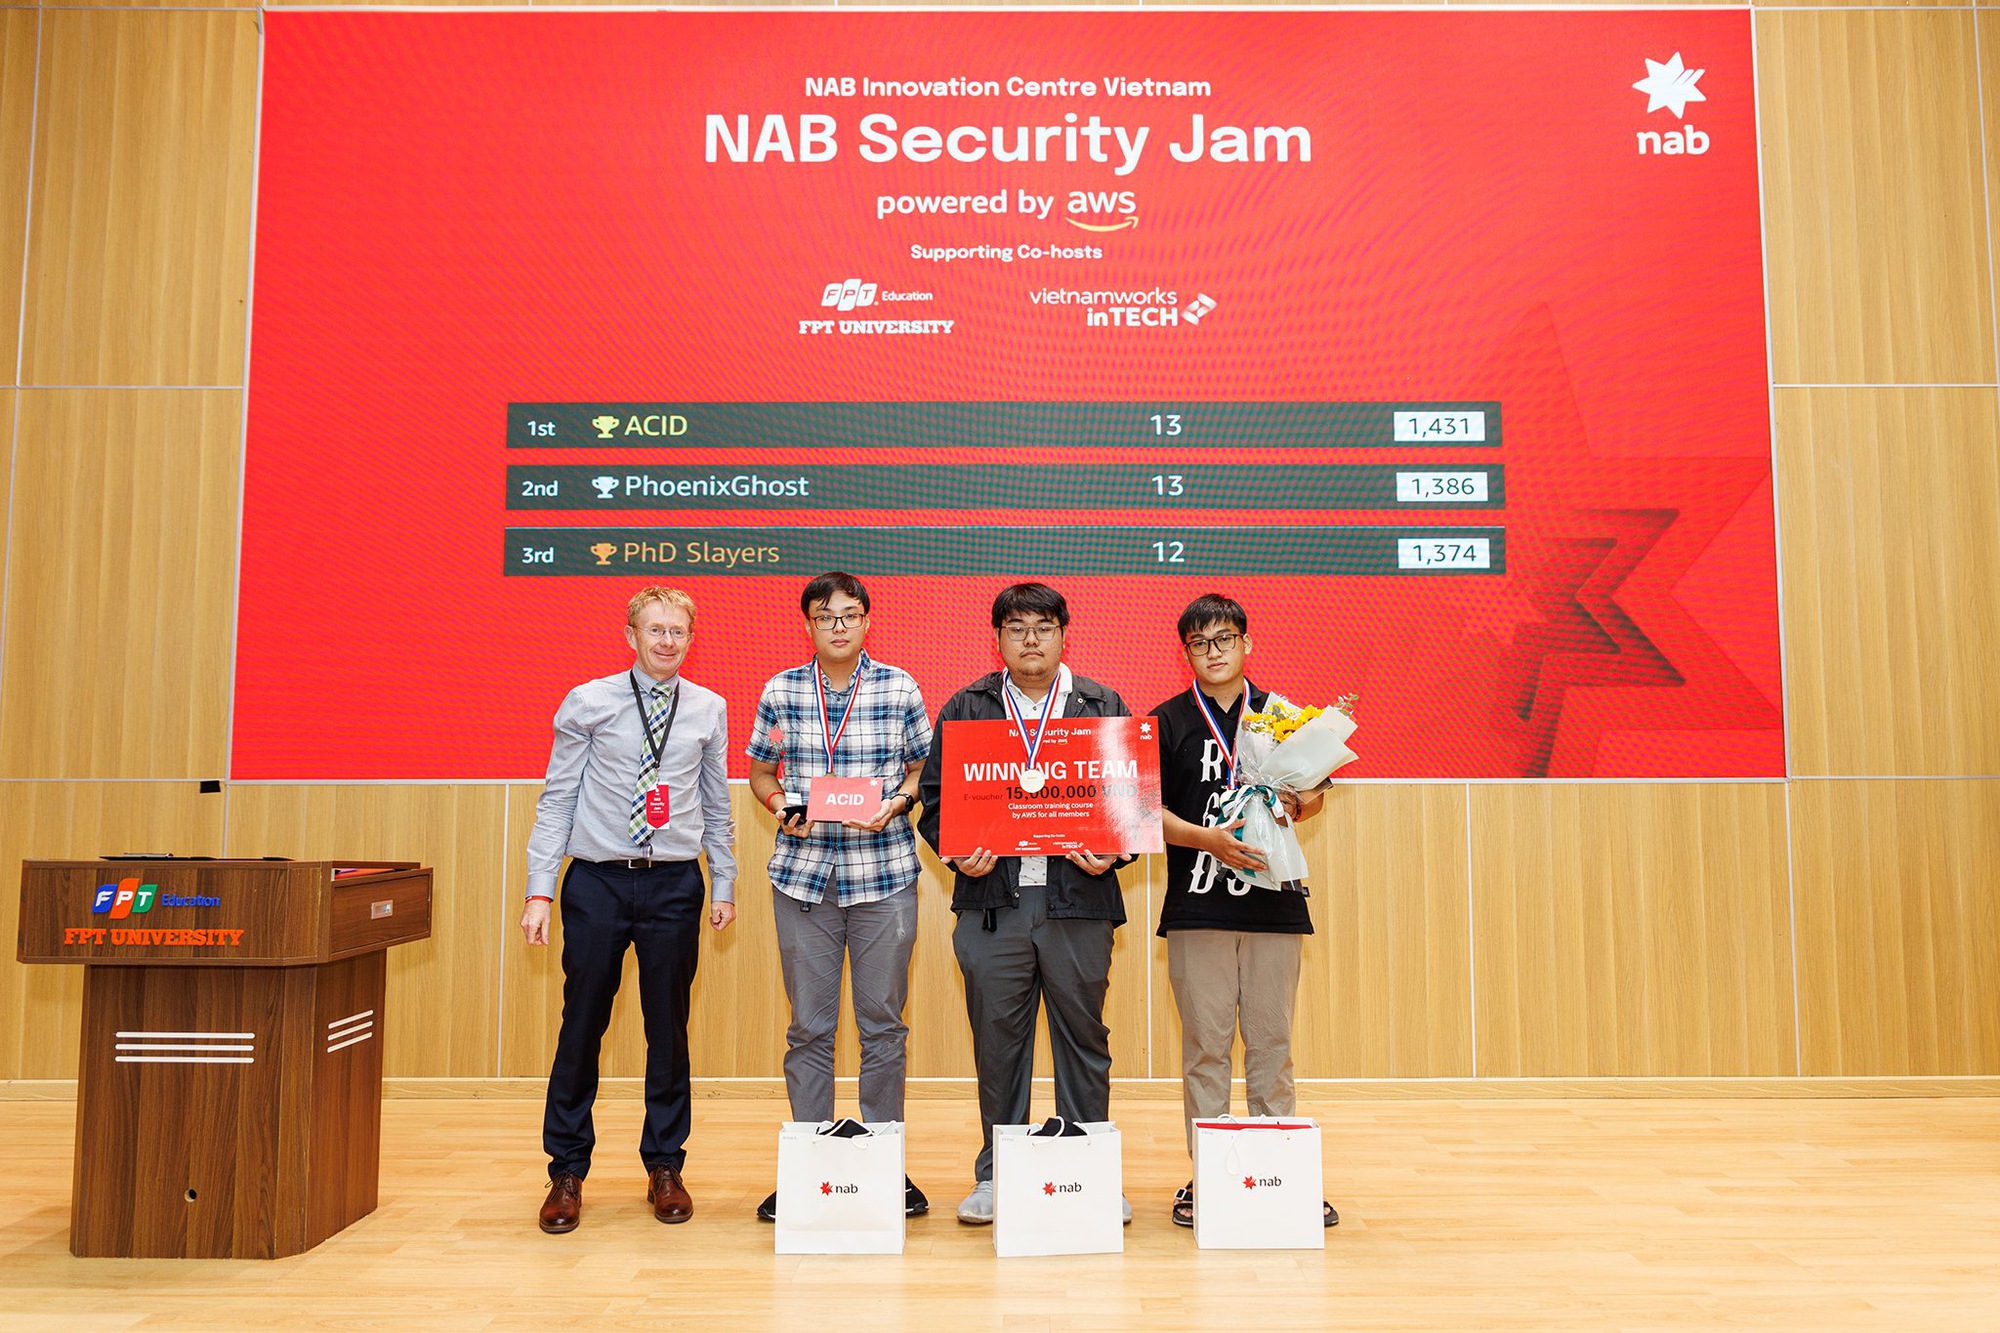 Security Jam: Sân chơi dành cho giới trẻ yêu công nghệ được tổ chức bởi NAB Innovation Centre Vietnam trên nền tảng AWS Cloud - Ảnh 3.